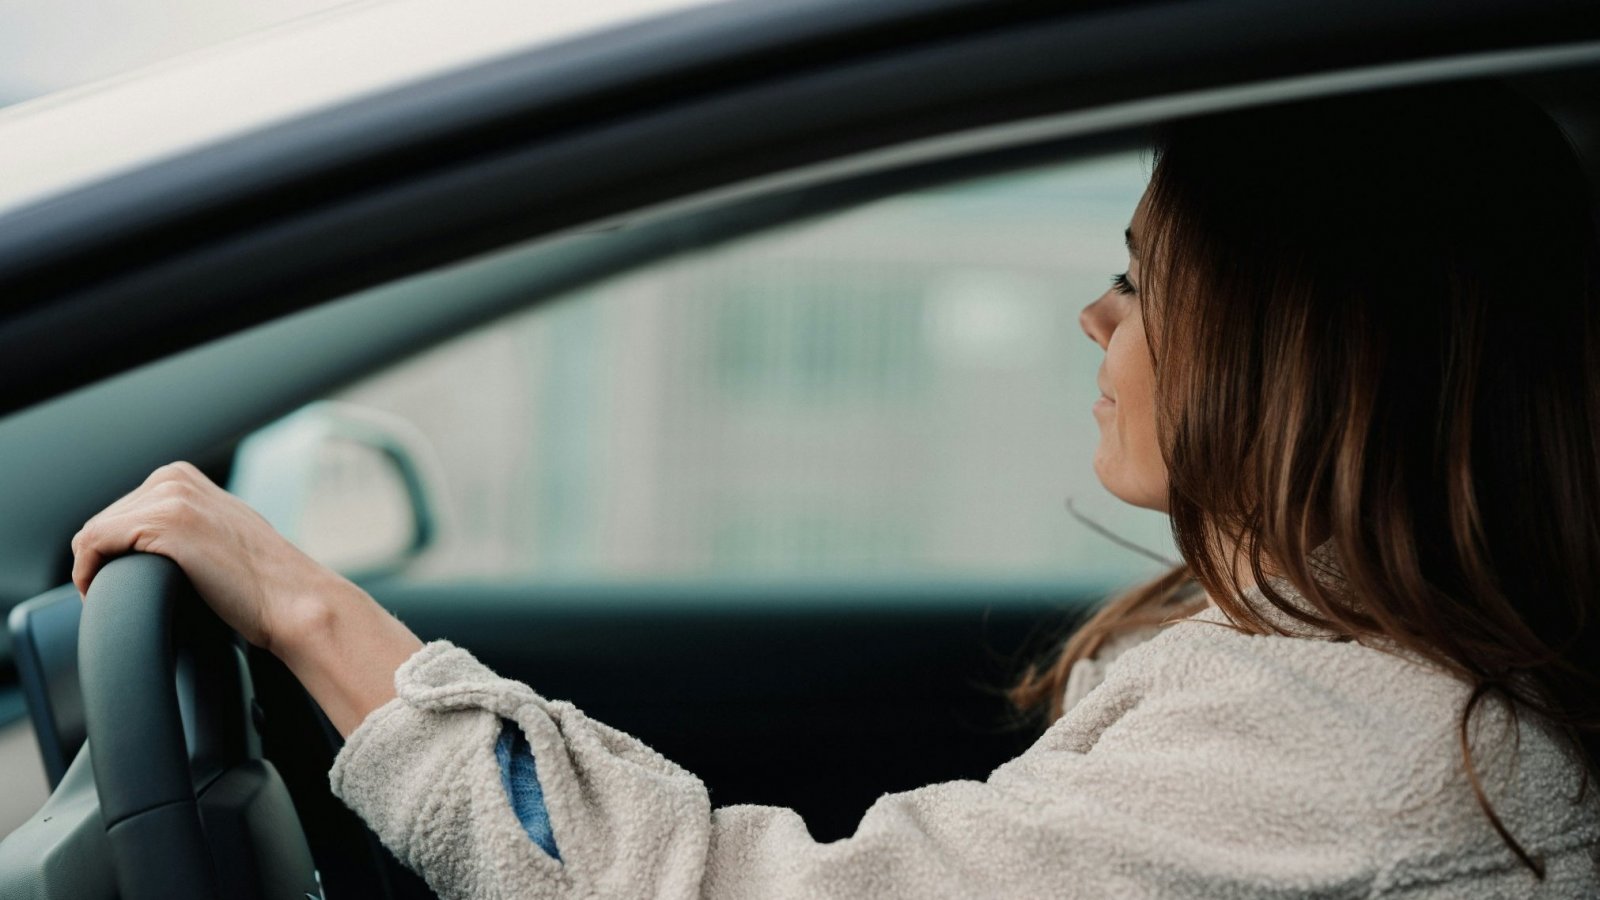 Imagen referencial de mujer conduciendo un vehículo.